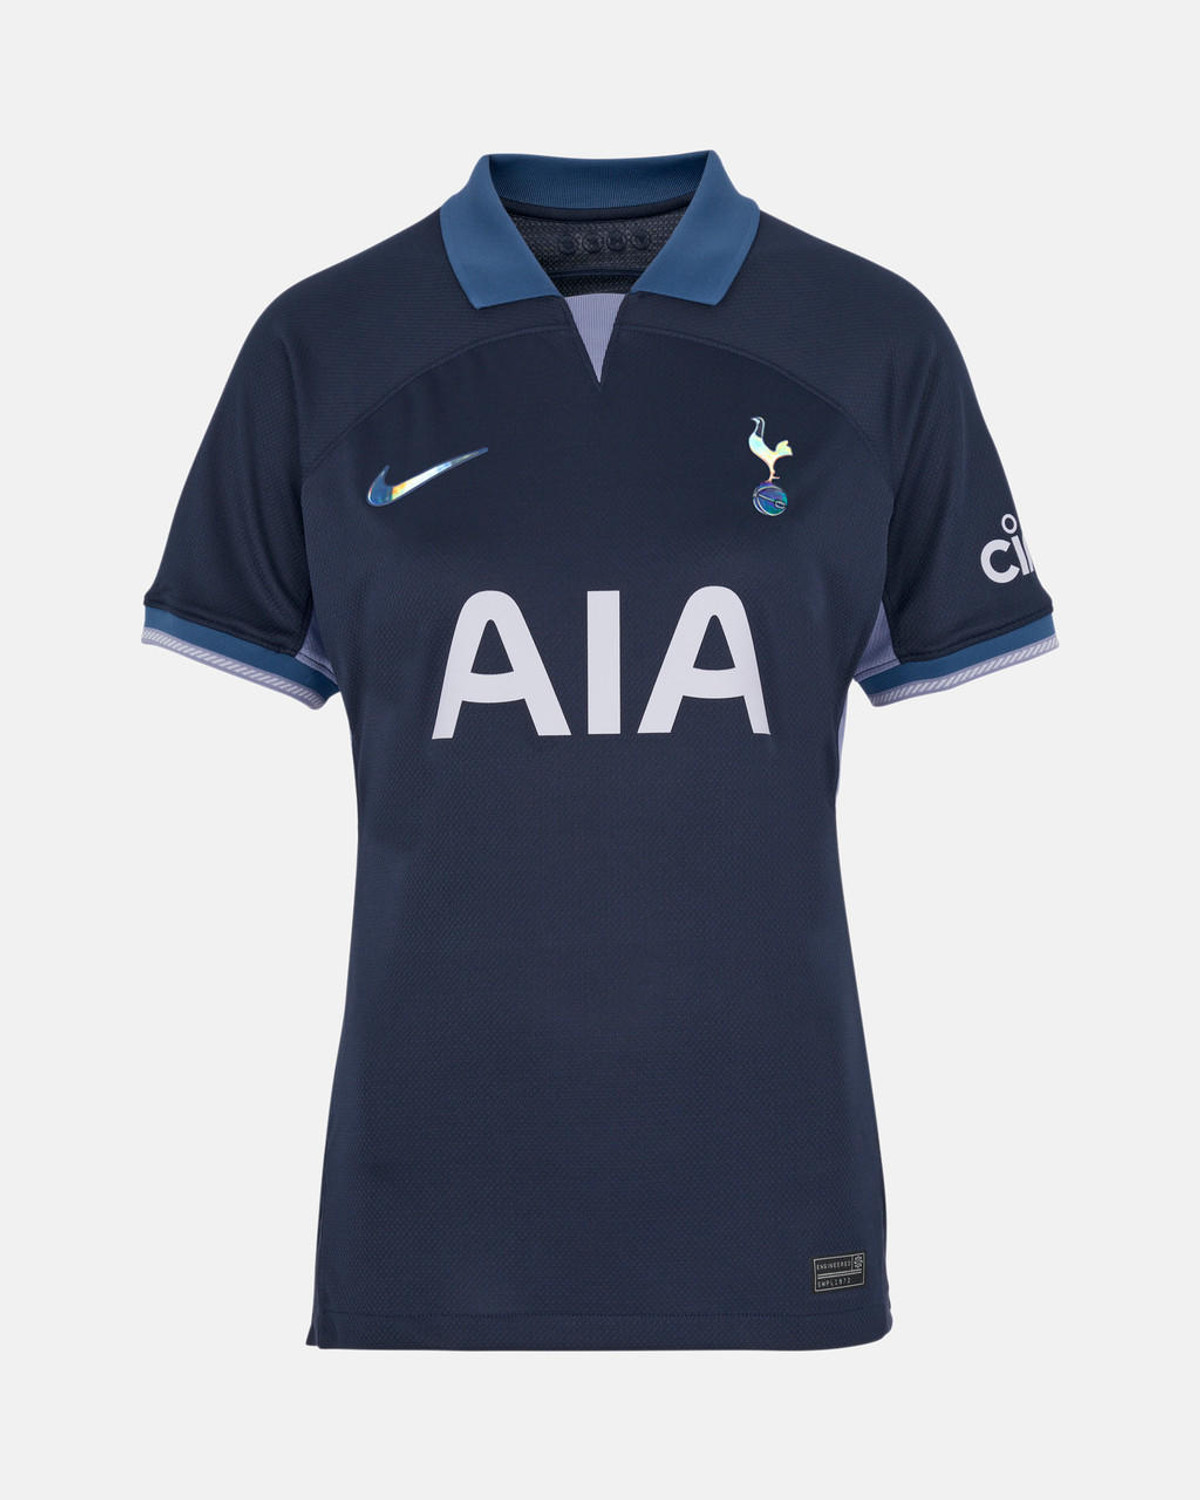 Where can I buy Tottenham's kit for 2019/20 cheapest?